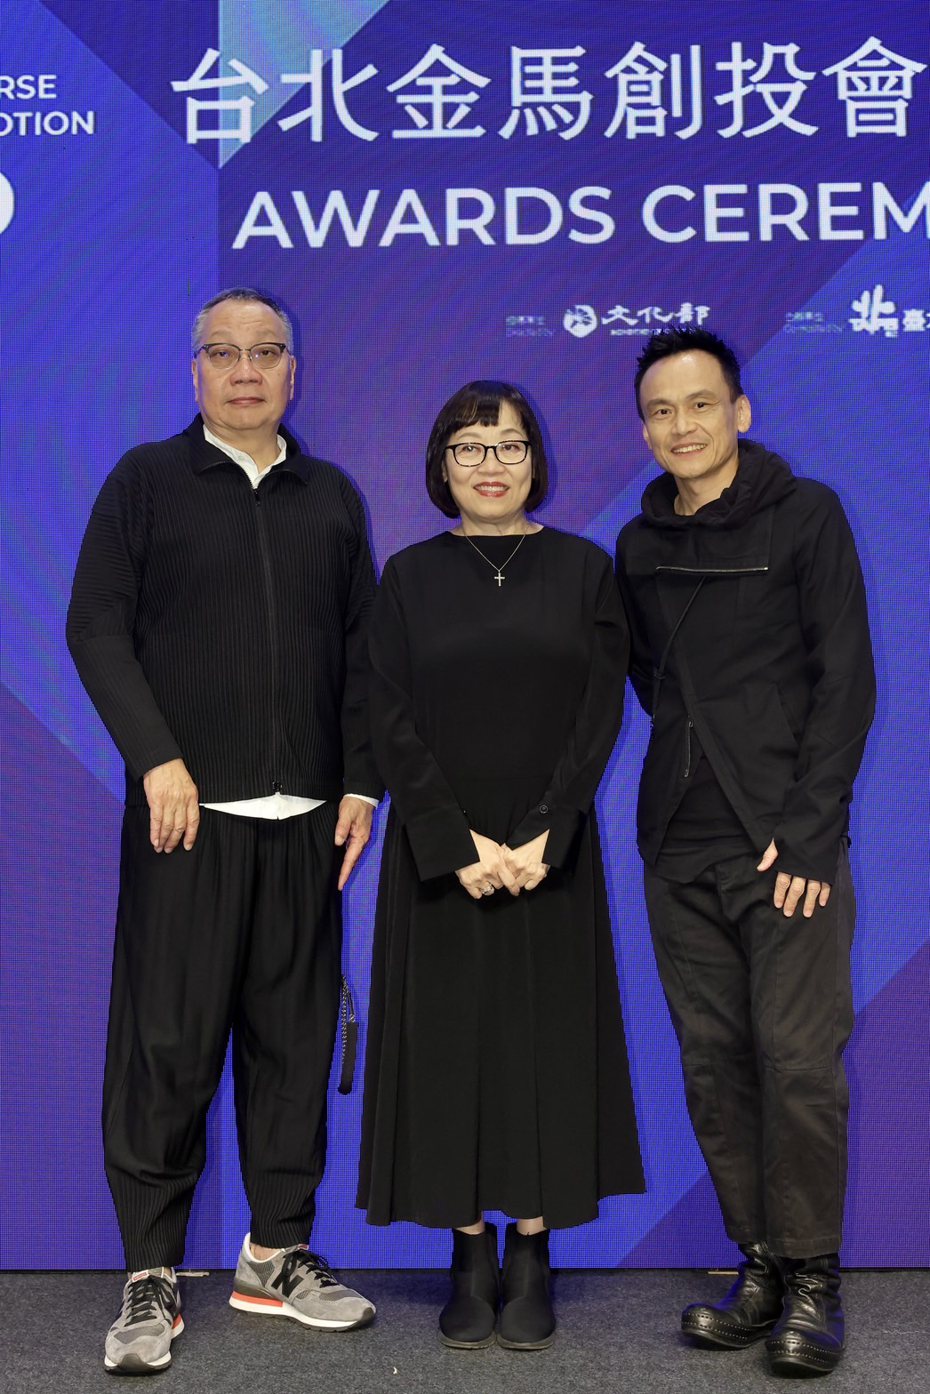 陈以文(右起)和曾丽芬、陈永雄一同担任台北金马创投会议评审。记者李政龙／摄影